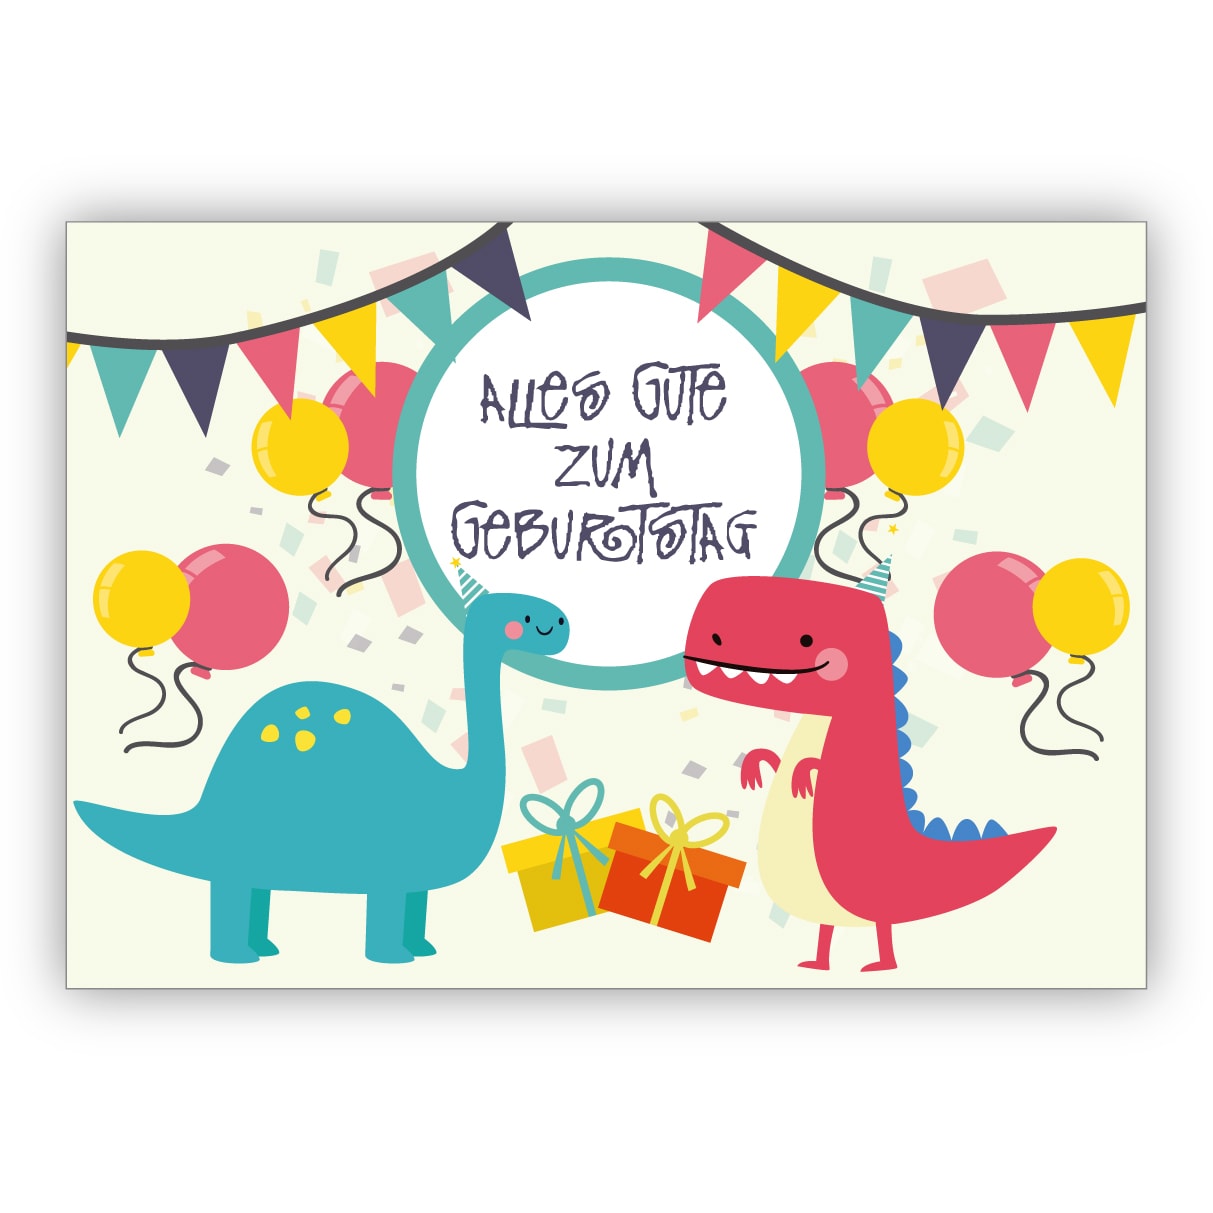 Coole Geburtstagskarte Mit Dinosauriern In Party Stimmung Und Mit Luftballons Alles Gute Zum Geburtstag Kartenkaufrausch De